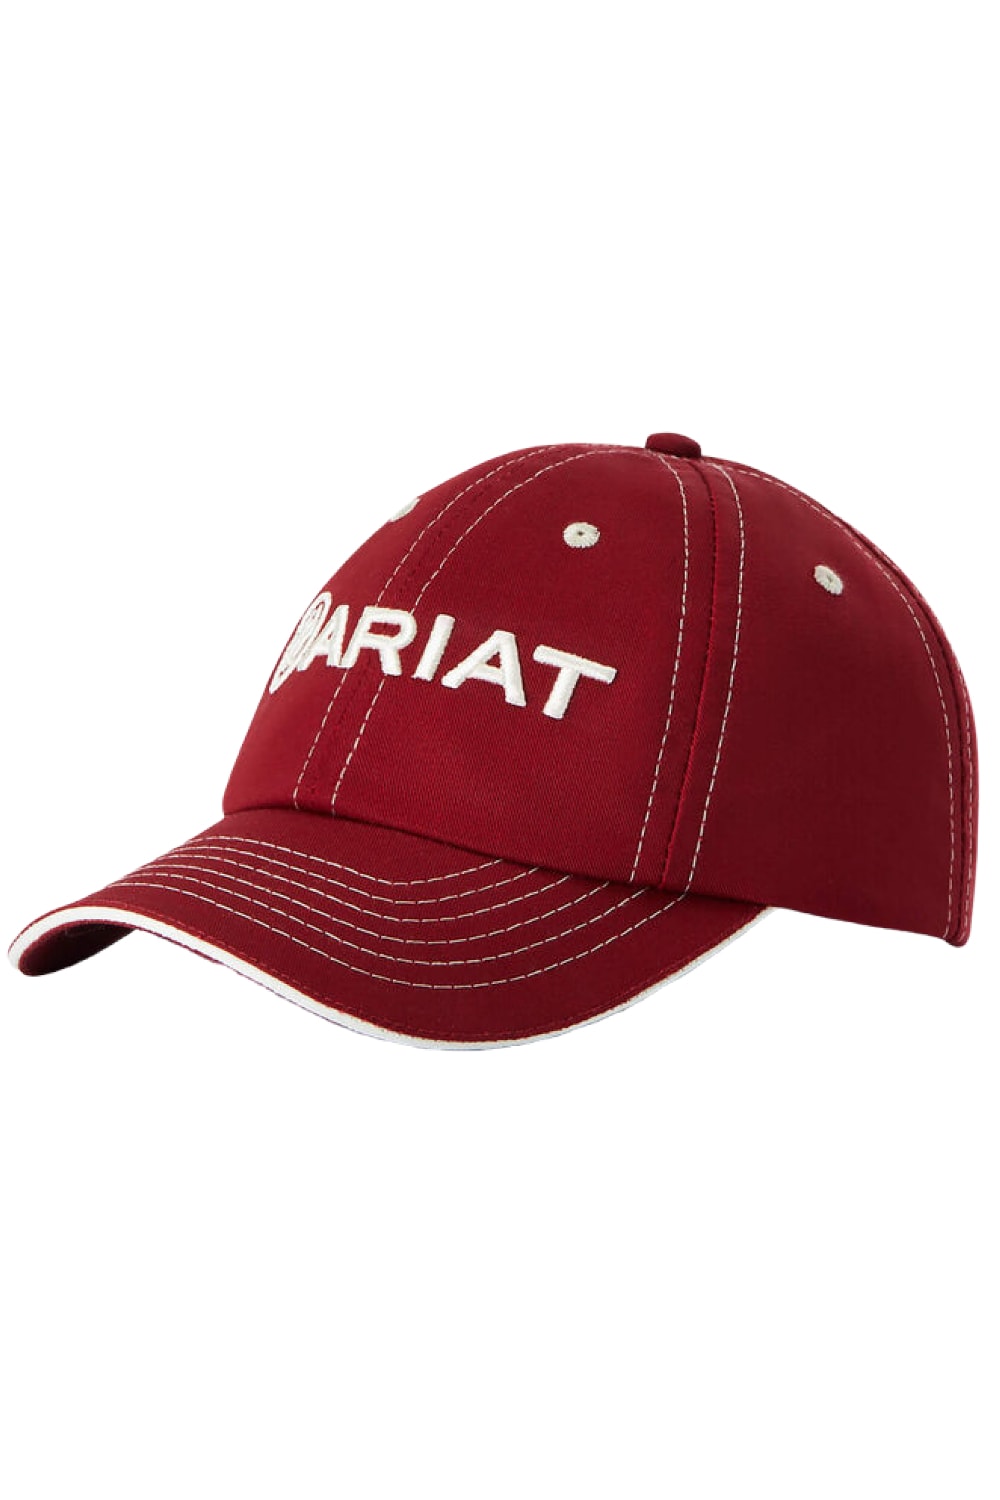 Ariat Unisex Team II Cap in Red Bud/Cream 